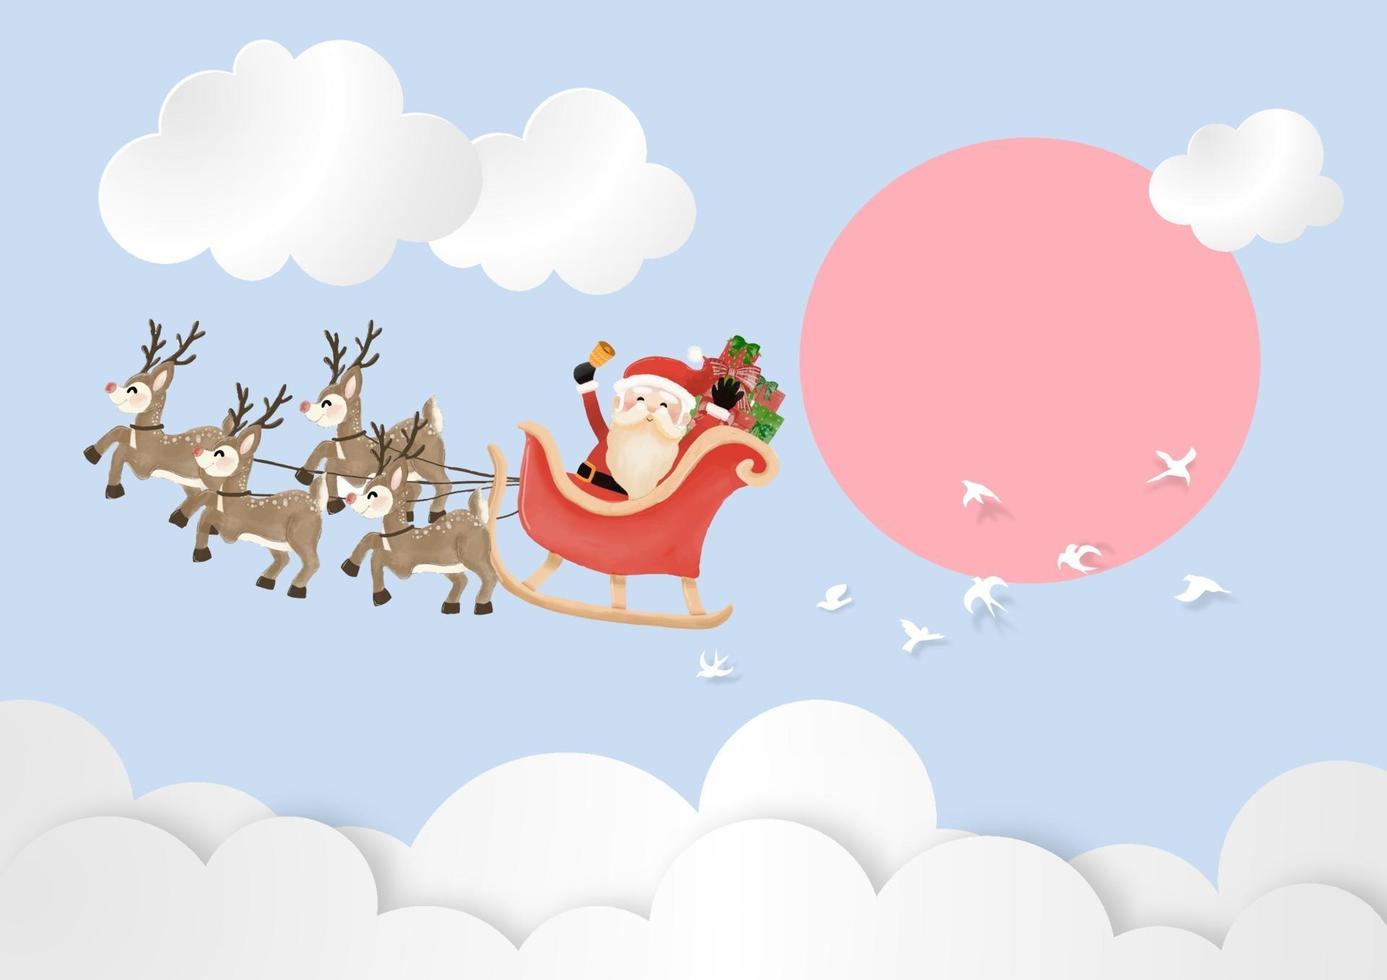 prettige kerstdagen en gelukkig nieuwjaar met de kerstman en rendieren slee de lucht in dagtijd vector en illustratie